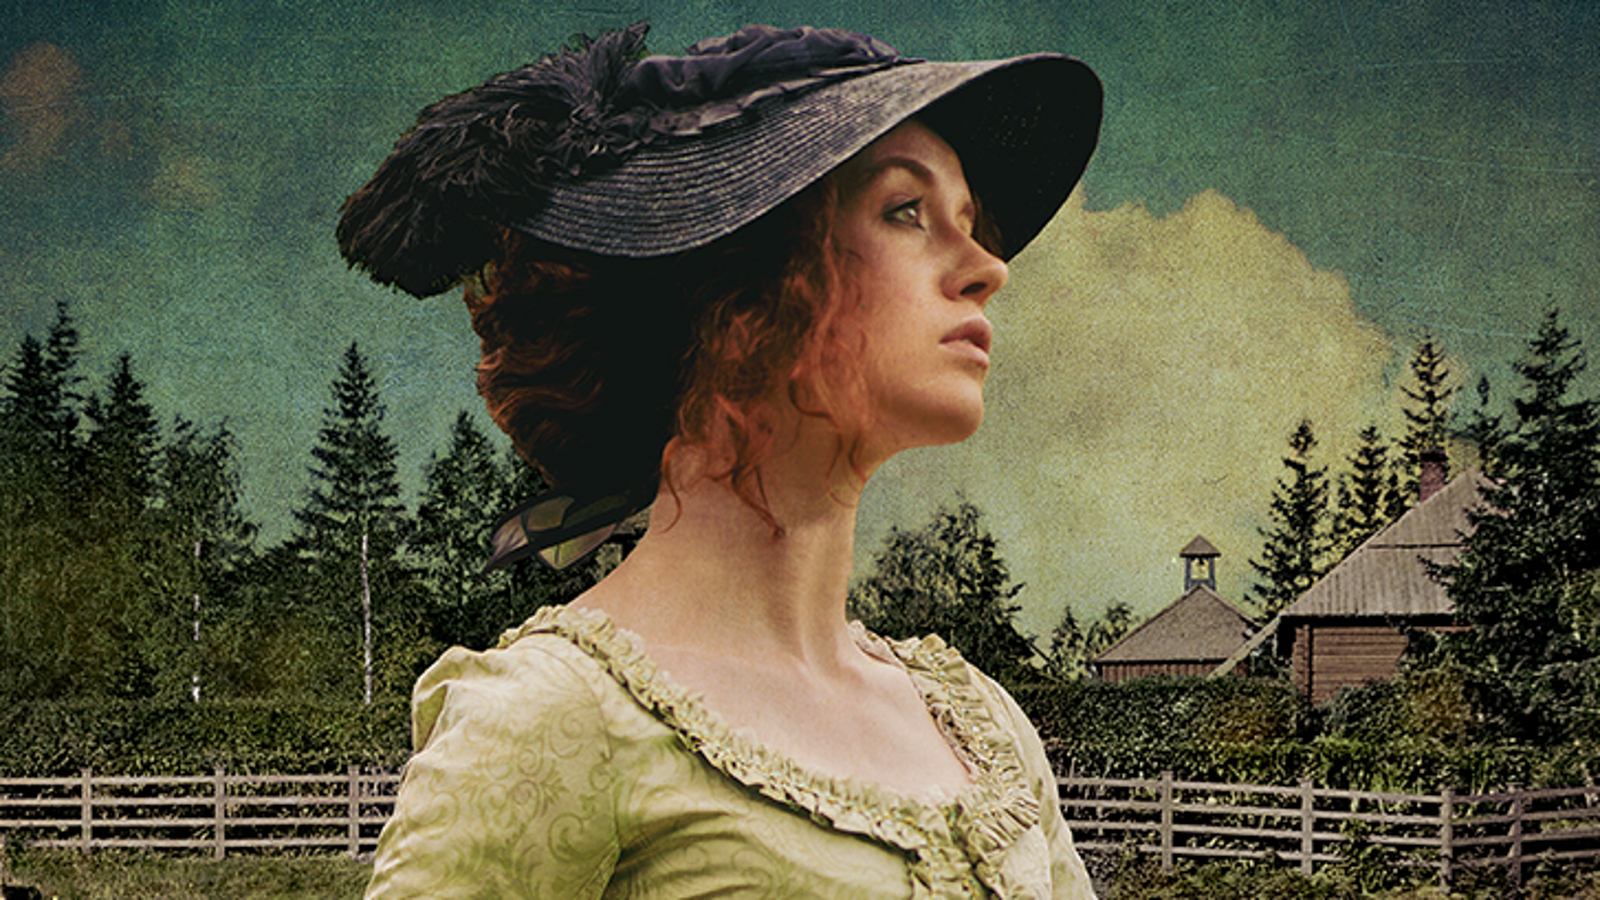 Kuvassa on nainen sivuttain puolivartalokuvassa ja hänellä on tumman harmaa lierihattu. Taustalla on vihreätä maisemaa sekä harmaata aitaa ja puiden takaa näkyy harmaita kattoja.